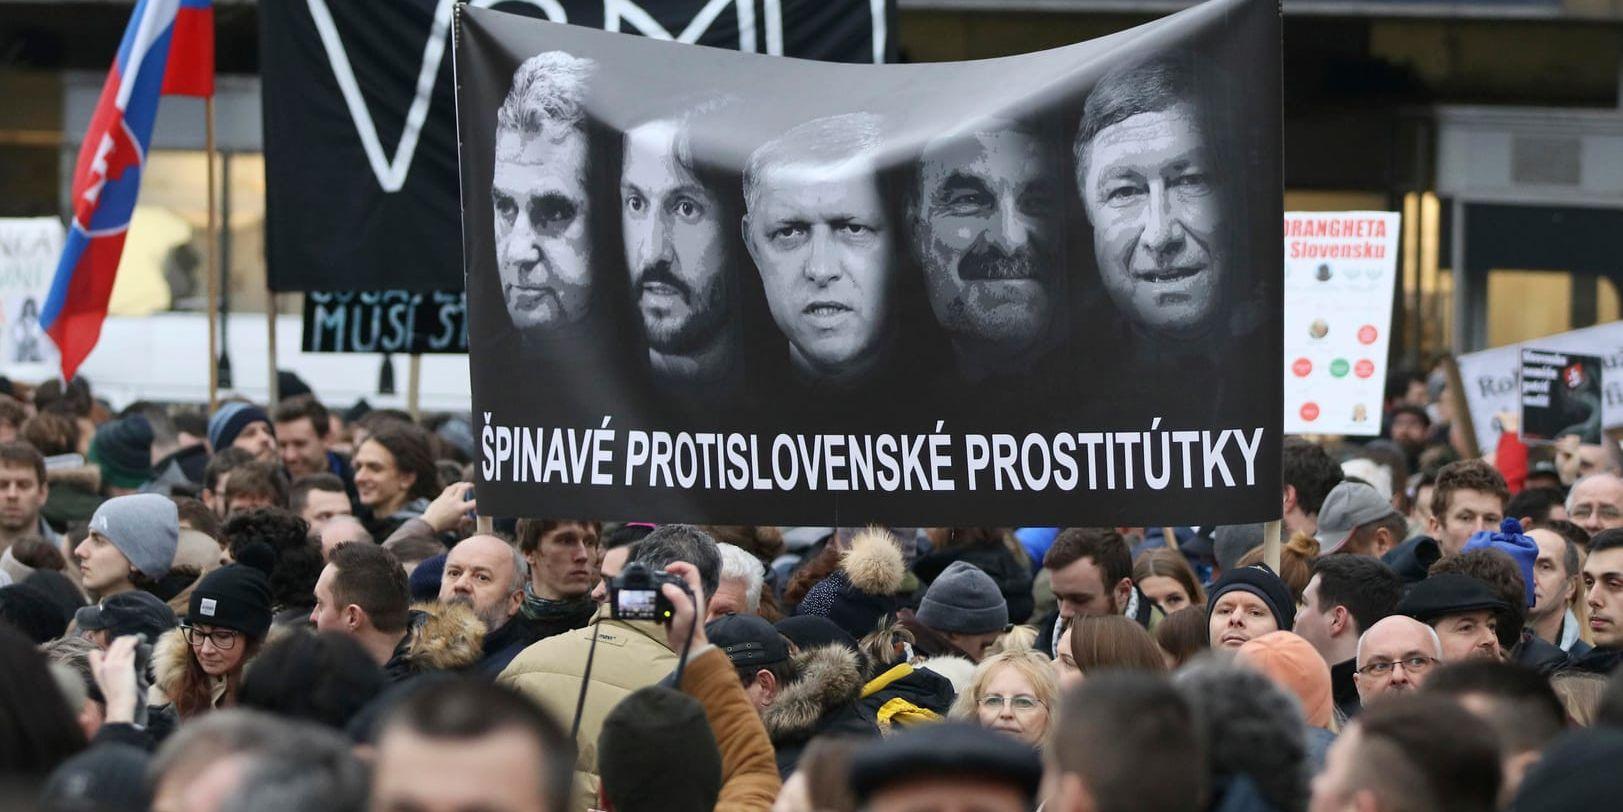 Banderoll där Slovakiens ledande politiker, däribland premiärminister Fico och avgående inrikesminister Kalinak, pekas ut som korrupta.